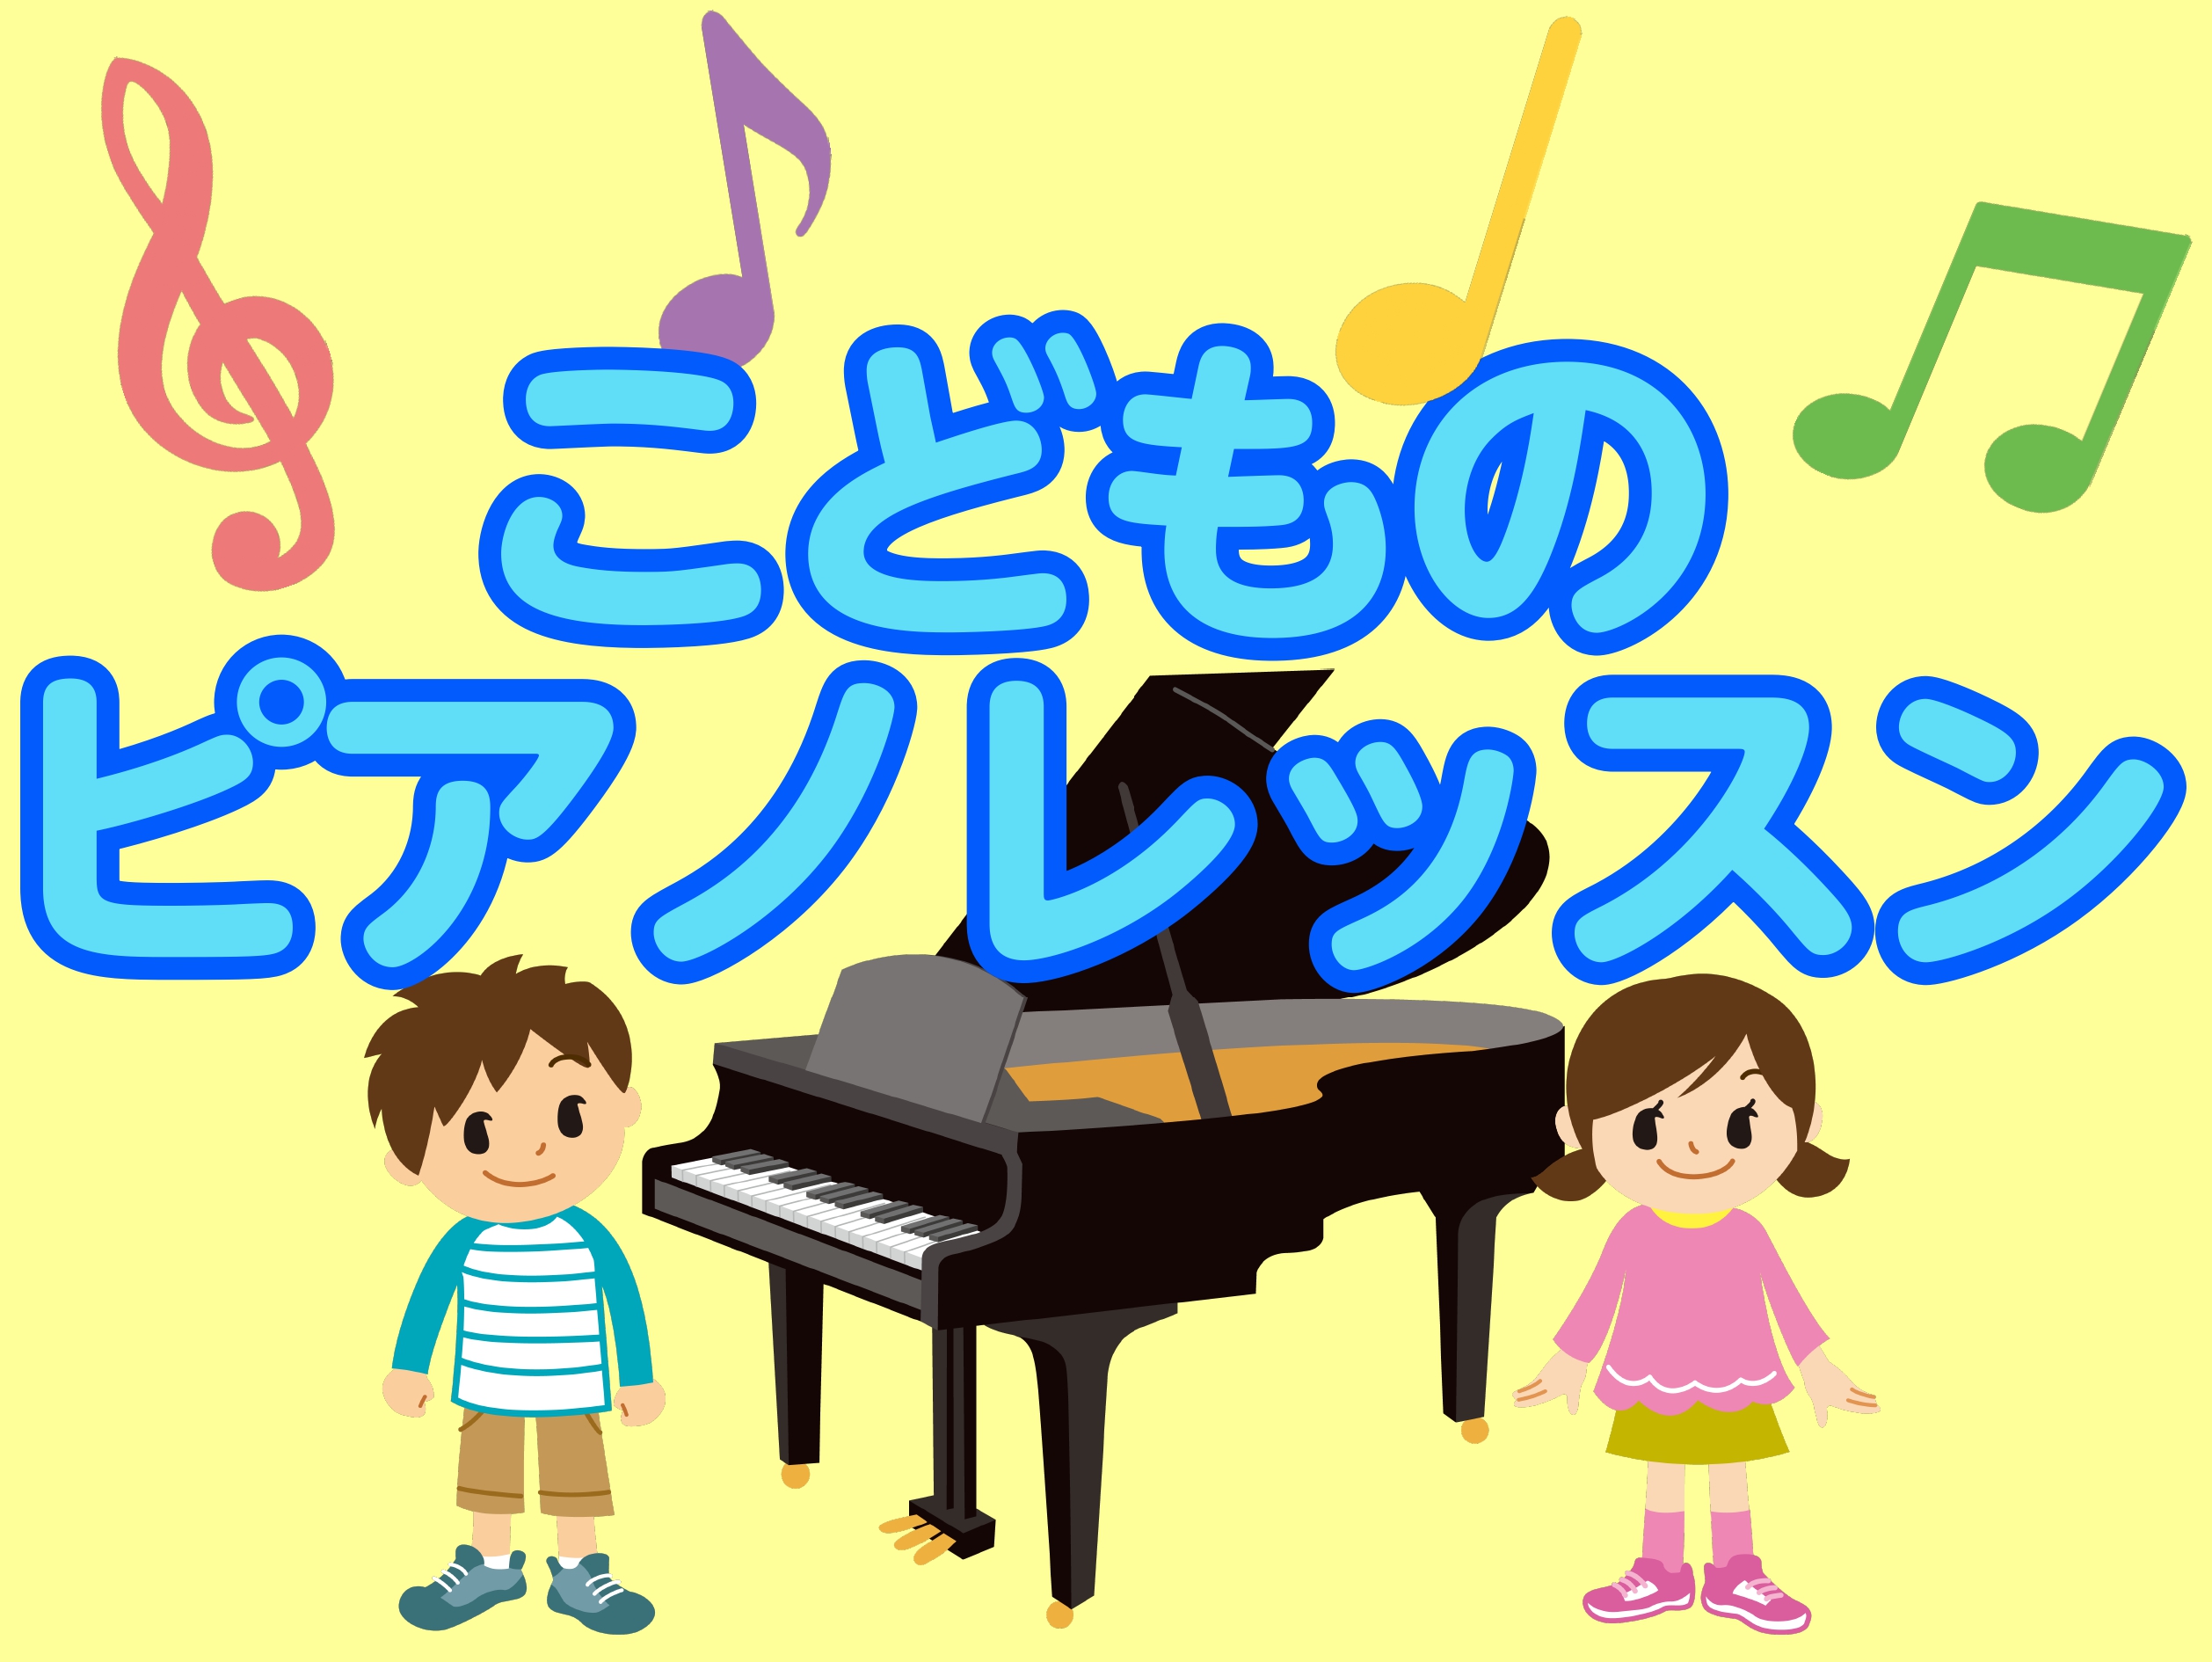 お子様の習い事として、昔も今もピアノは人気のレッスンです。情操教育としてはもちろんですが、長く楽しめる人生の趣味としてもおすすめできるレッスンです。島村楽器では3歳からピアノレッスンを行っております。 CONTENTS島村楽器のこどもピアノレッスンこどものレッスンと大人のレッスンの違いピアノ講師紹介 […]